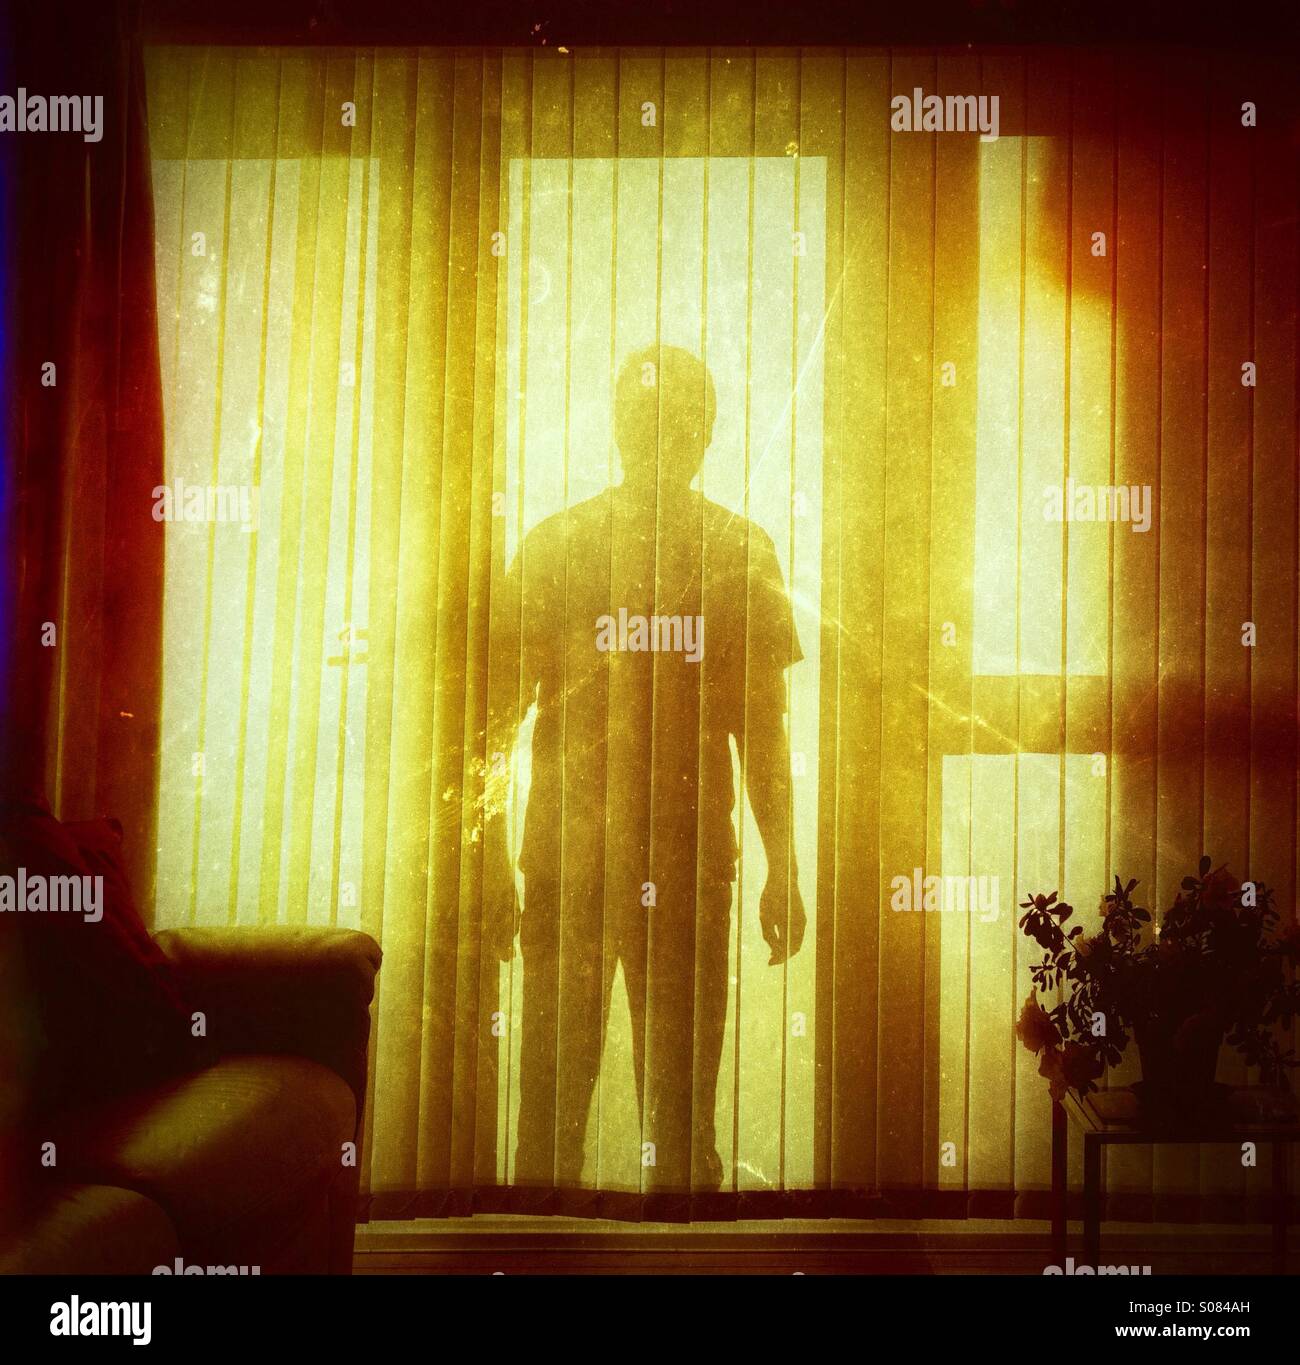 Schattenhafte Bedrohung Abbildung an einem inländischen home Fenster - Einbrecher stalker Silhouette Stockfoto